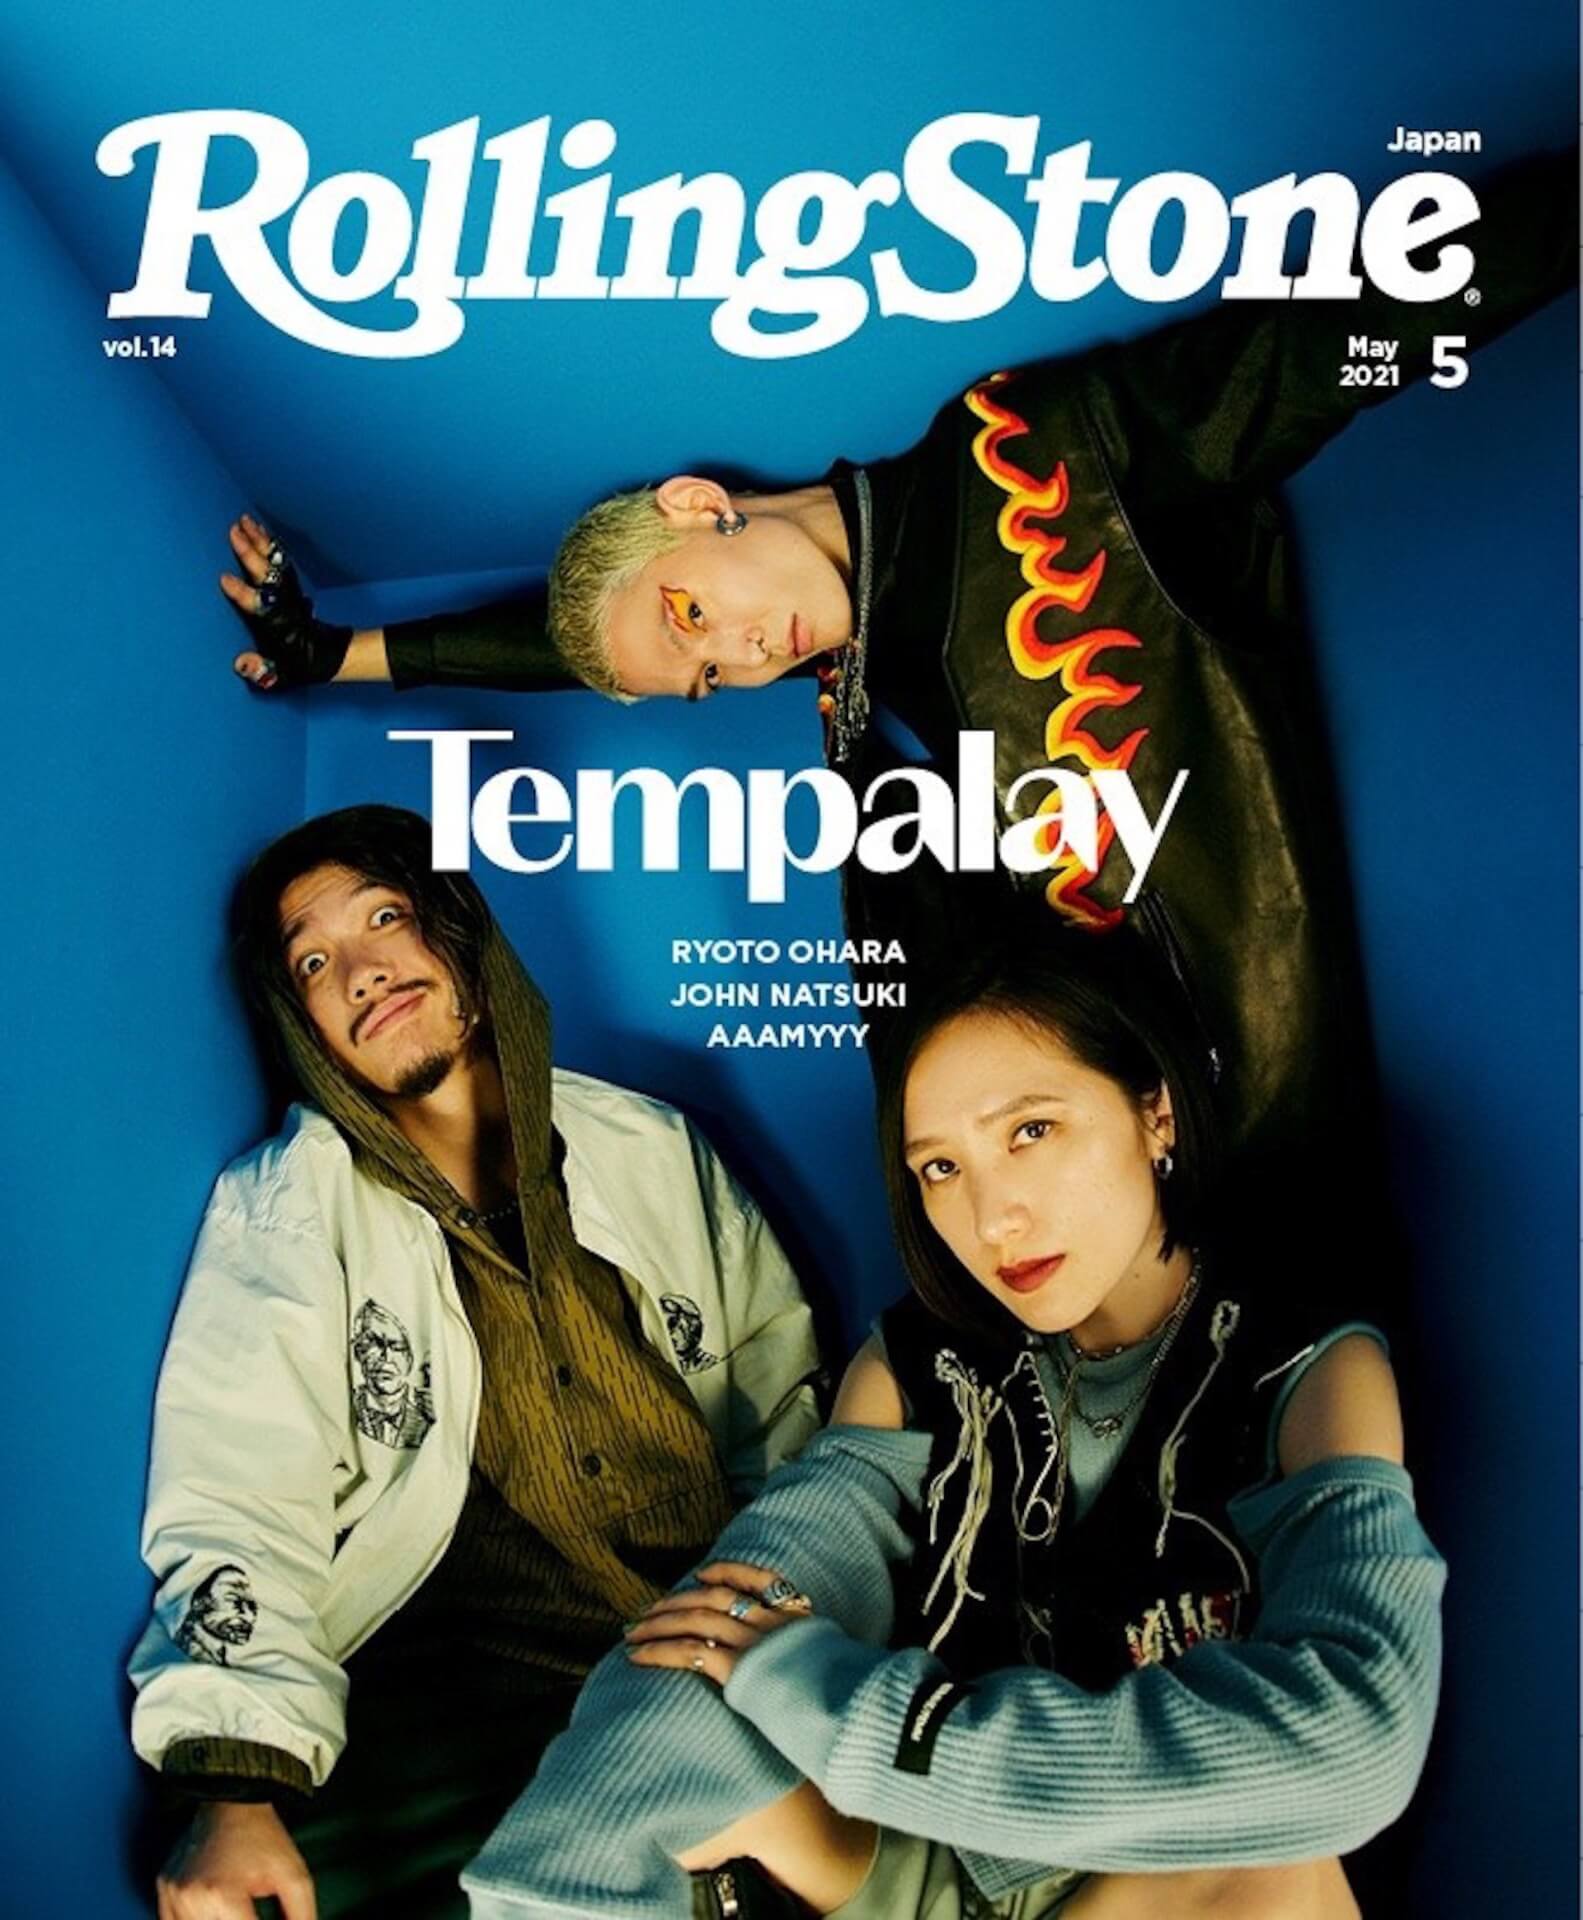 Tempalay from JAPAN アナログレコード LP - レコード